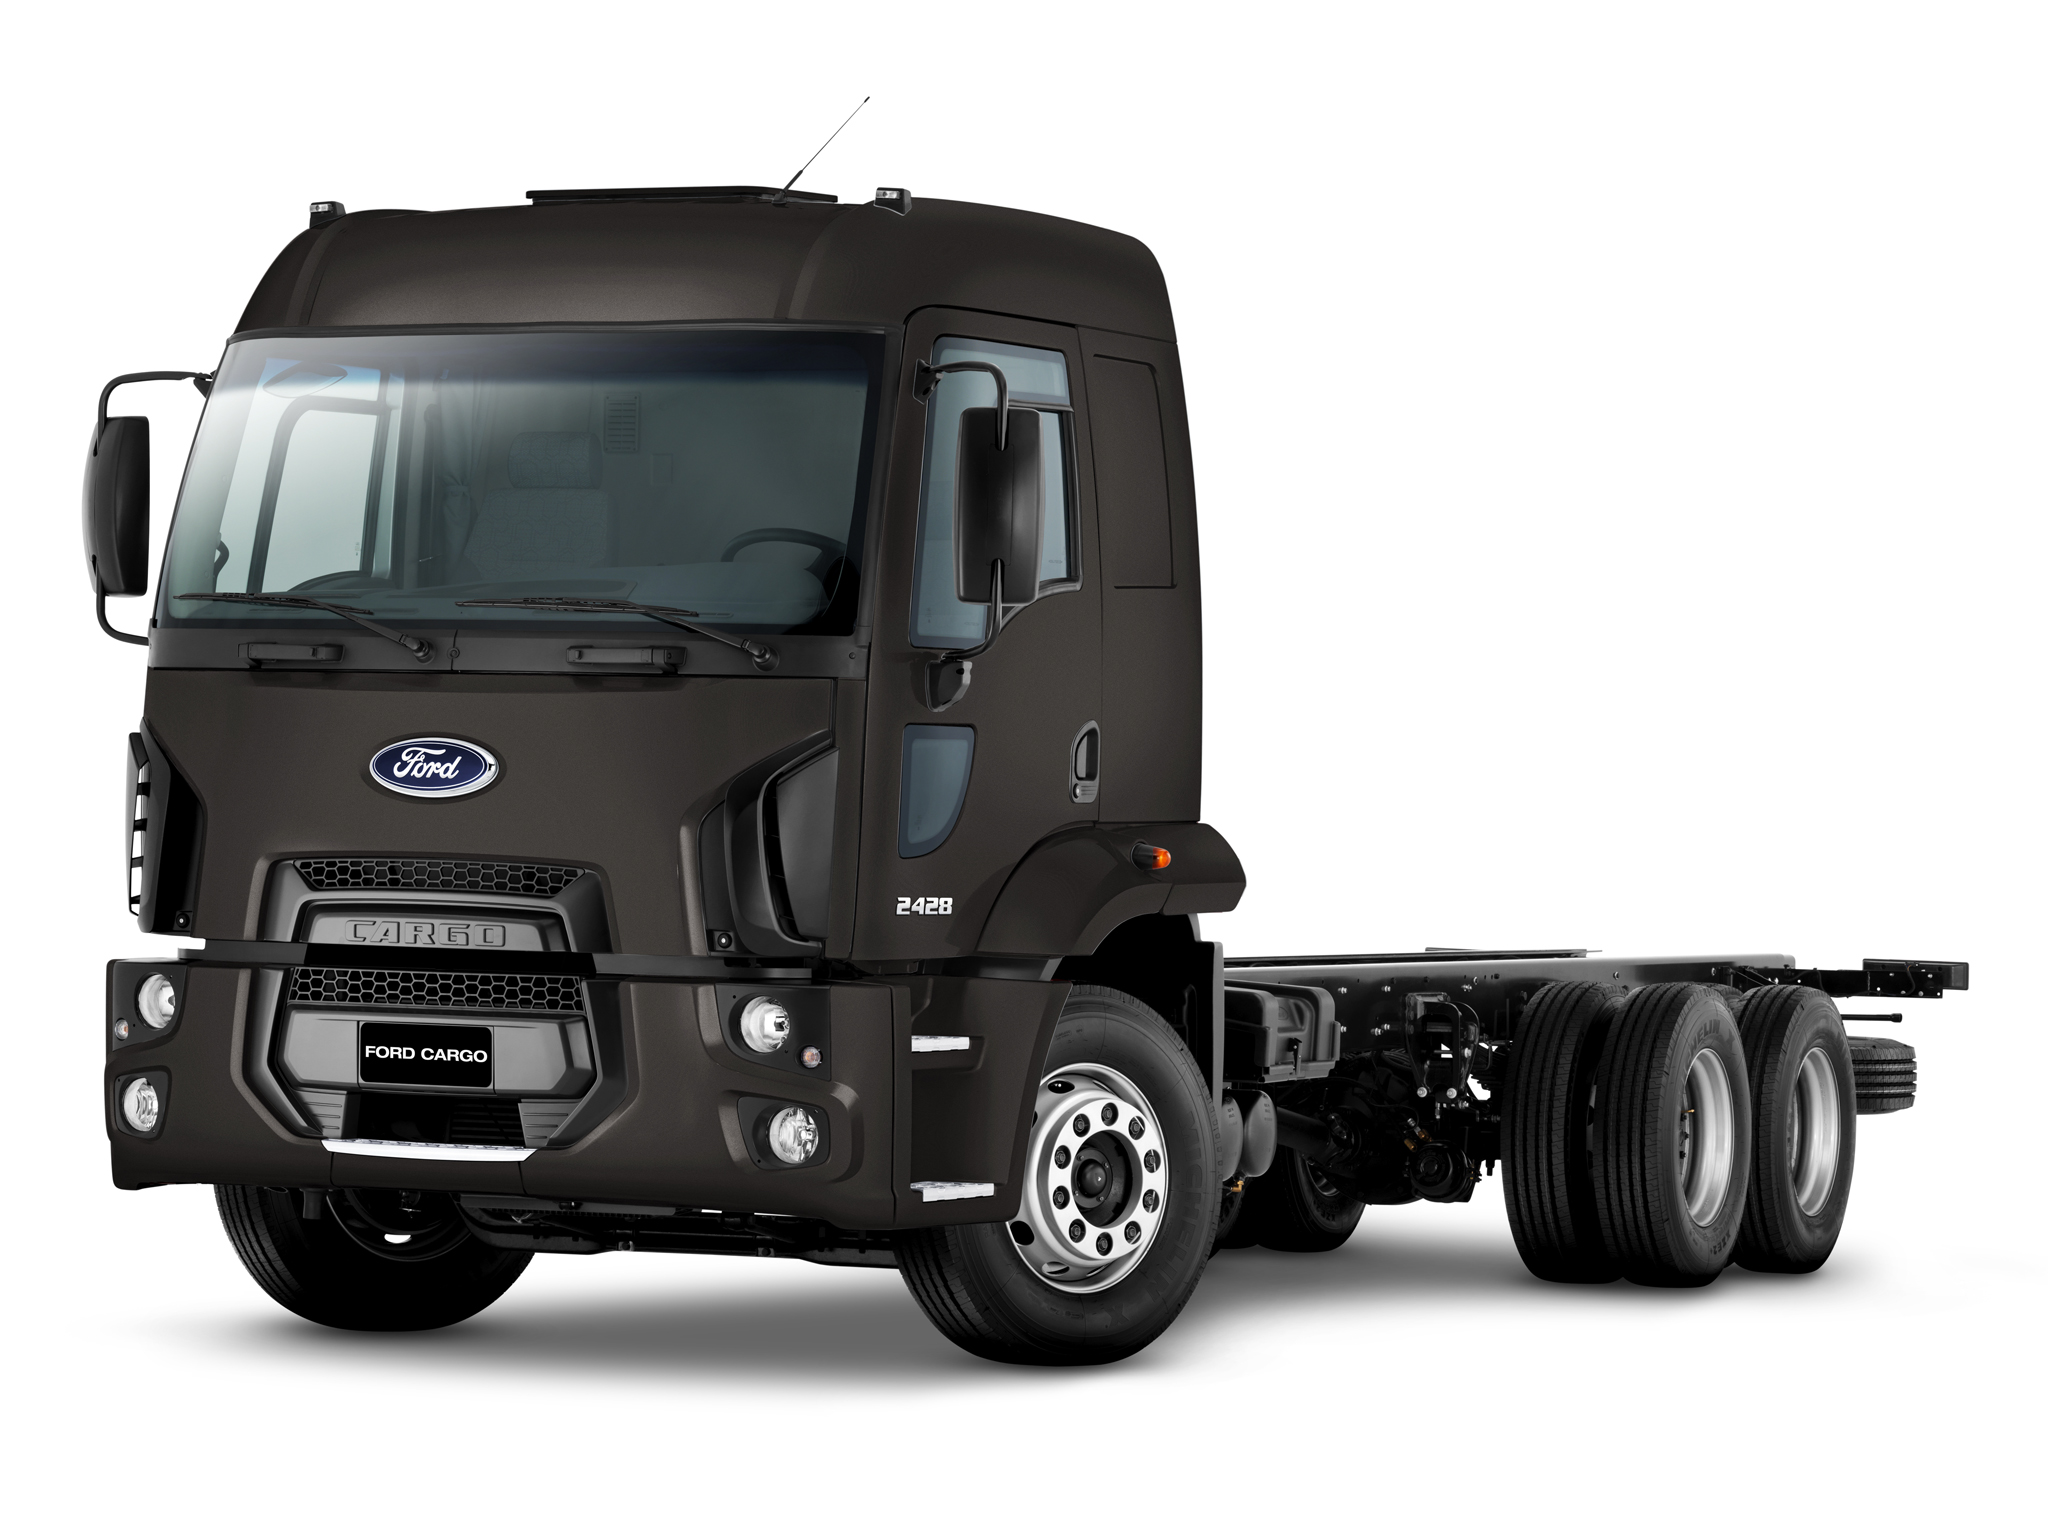 Tuning de alta calidad Ford Truck Cargo 2428 5.9L 280hp